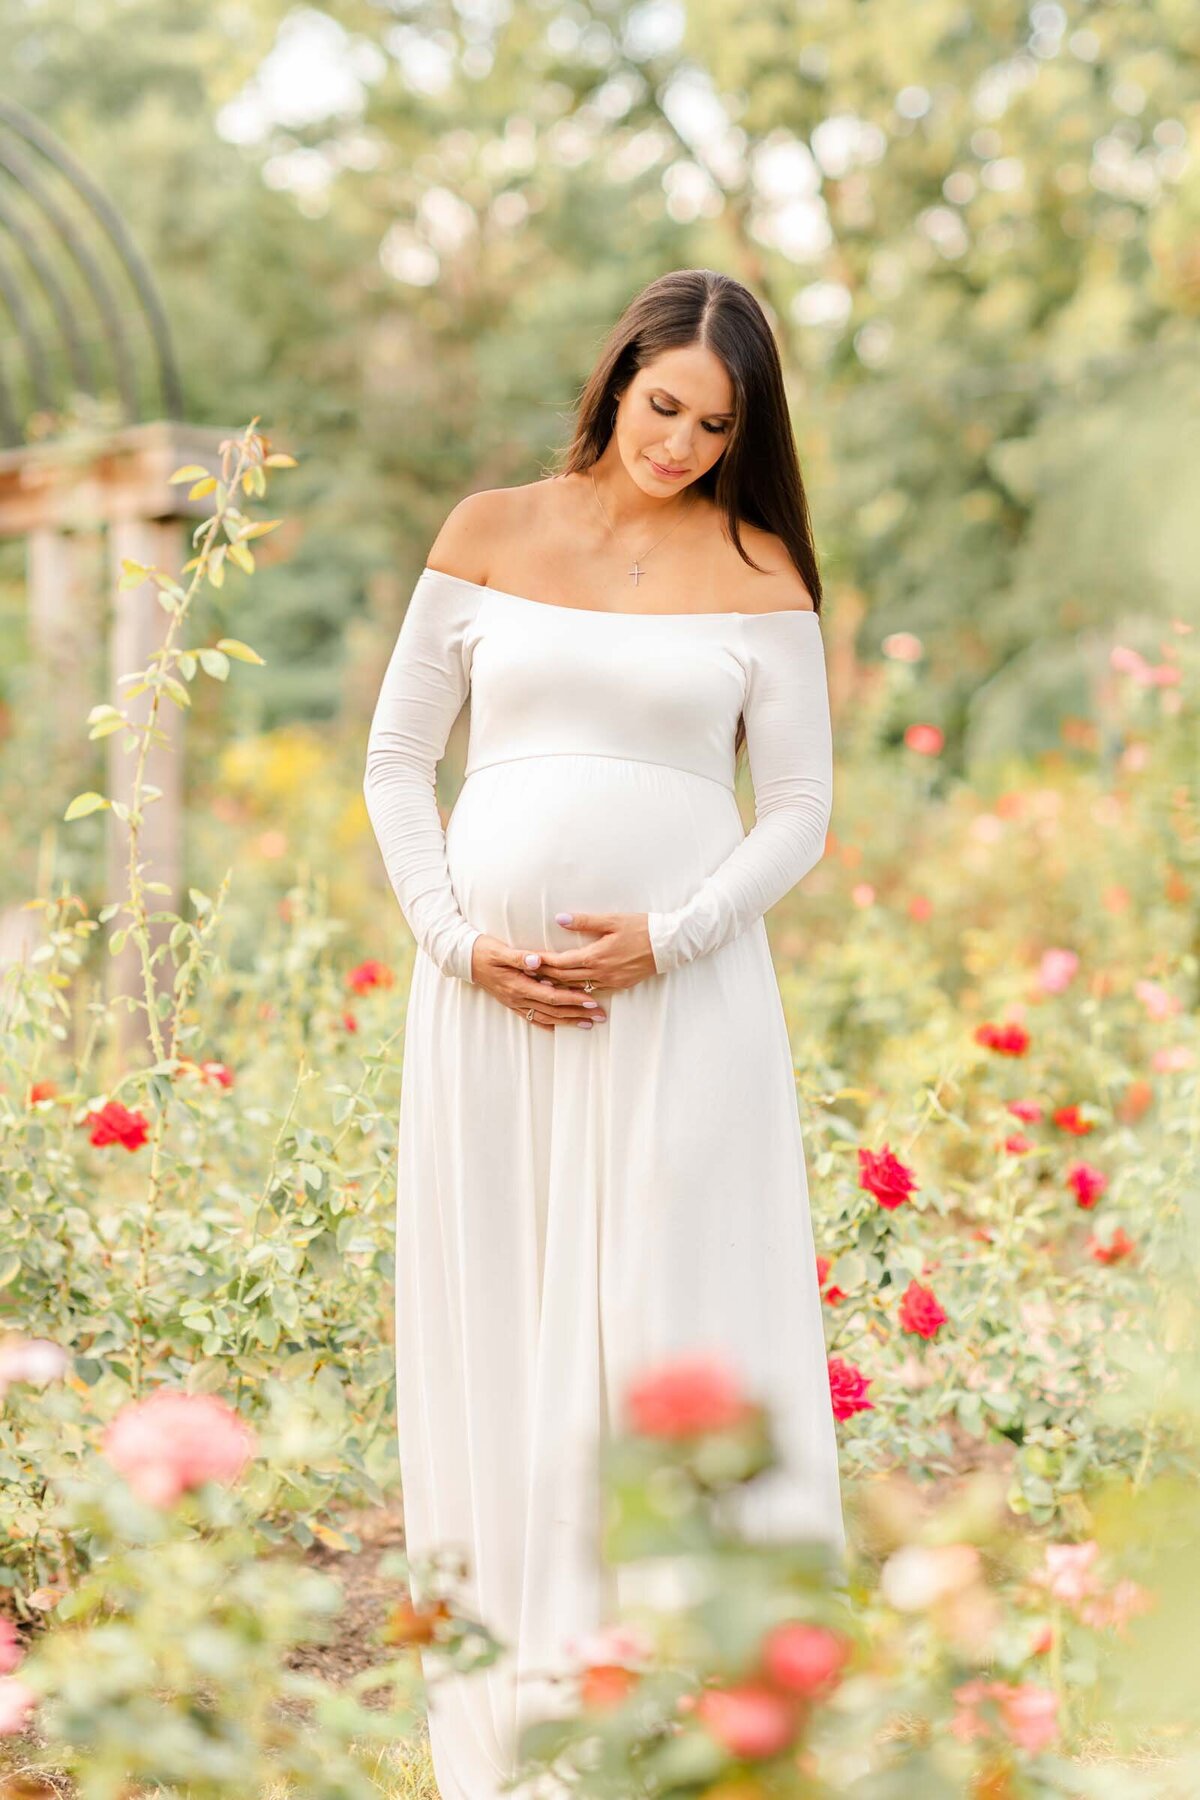 Arlington Va Maternity Photographer - Heidi Fam Photography